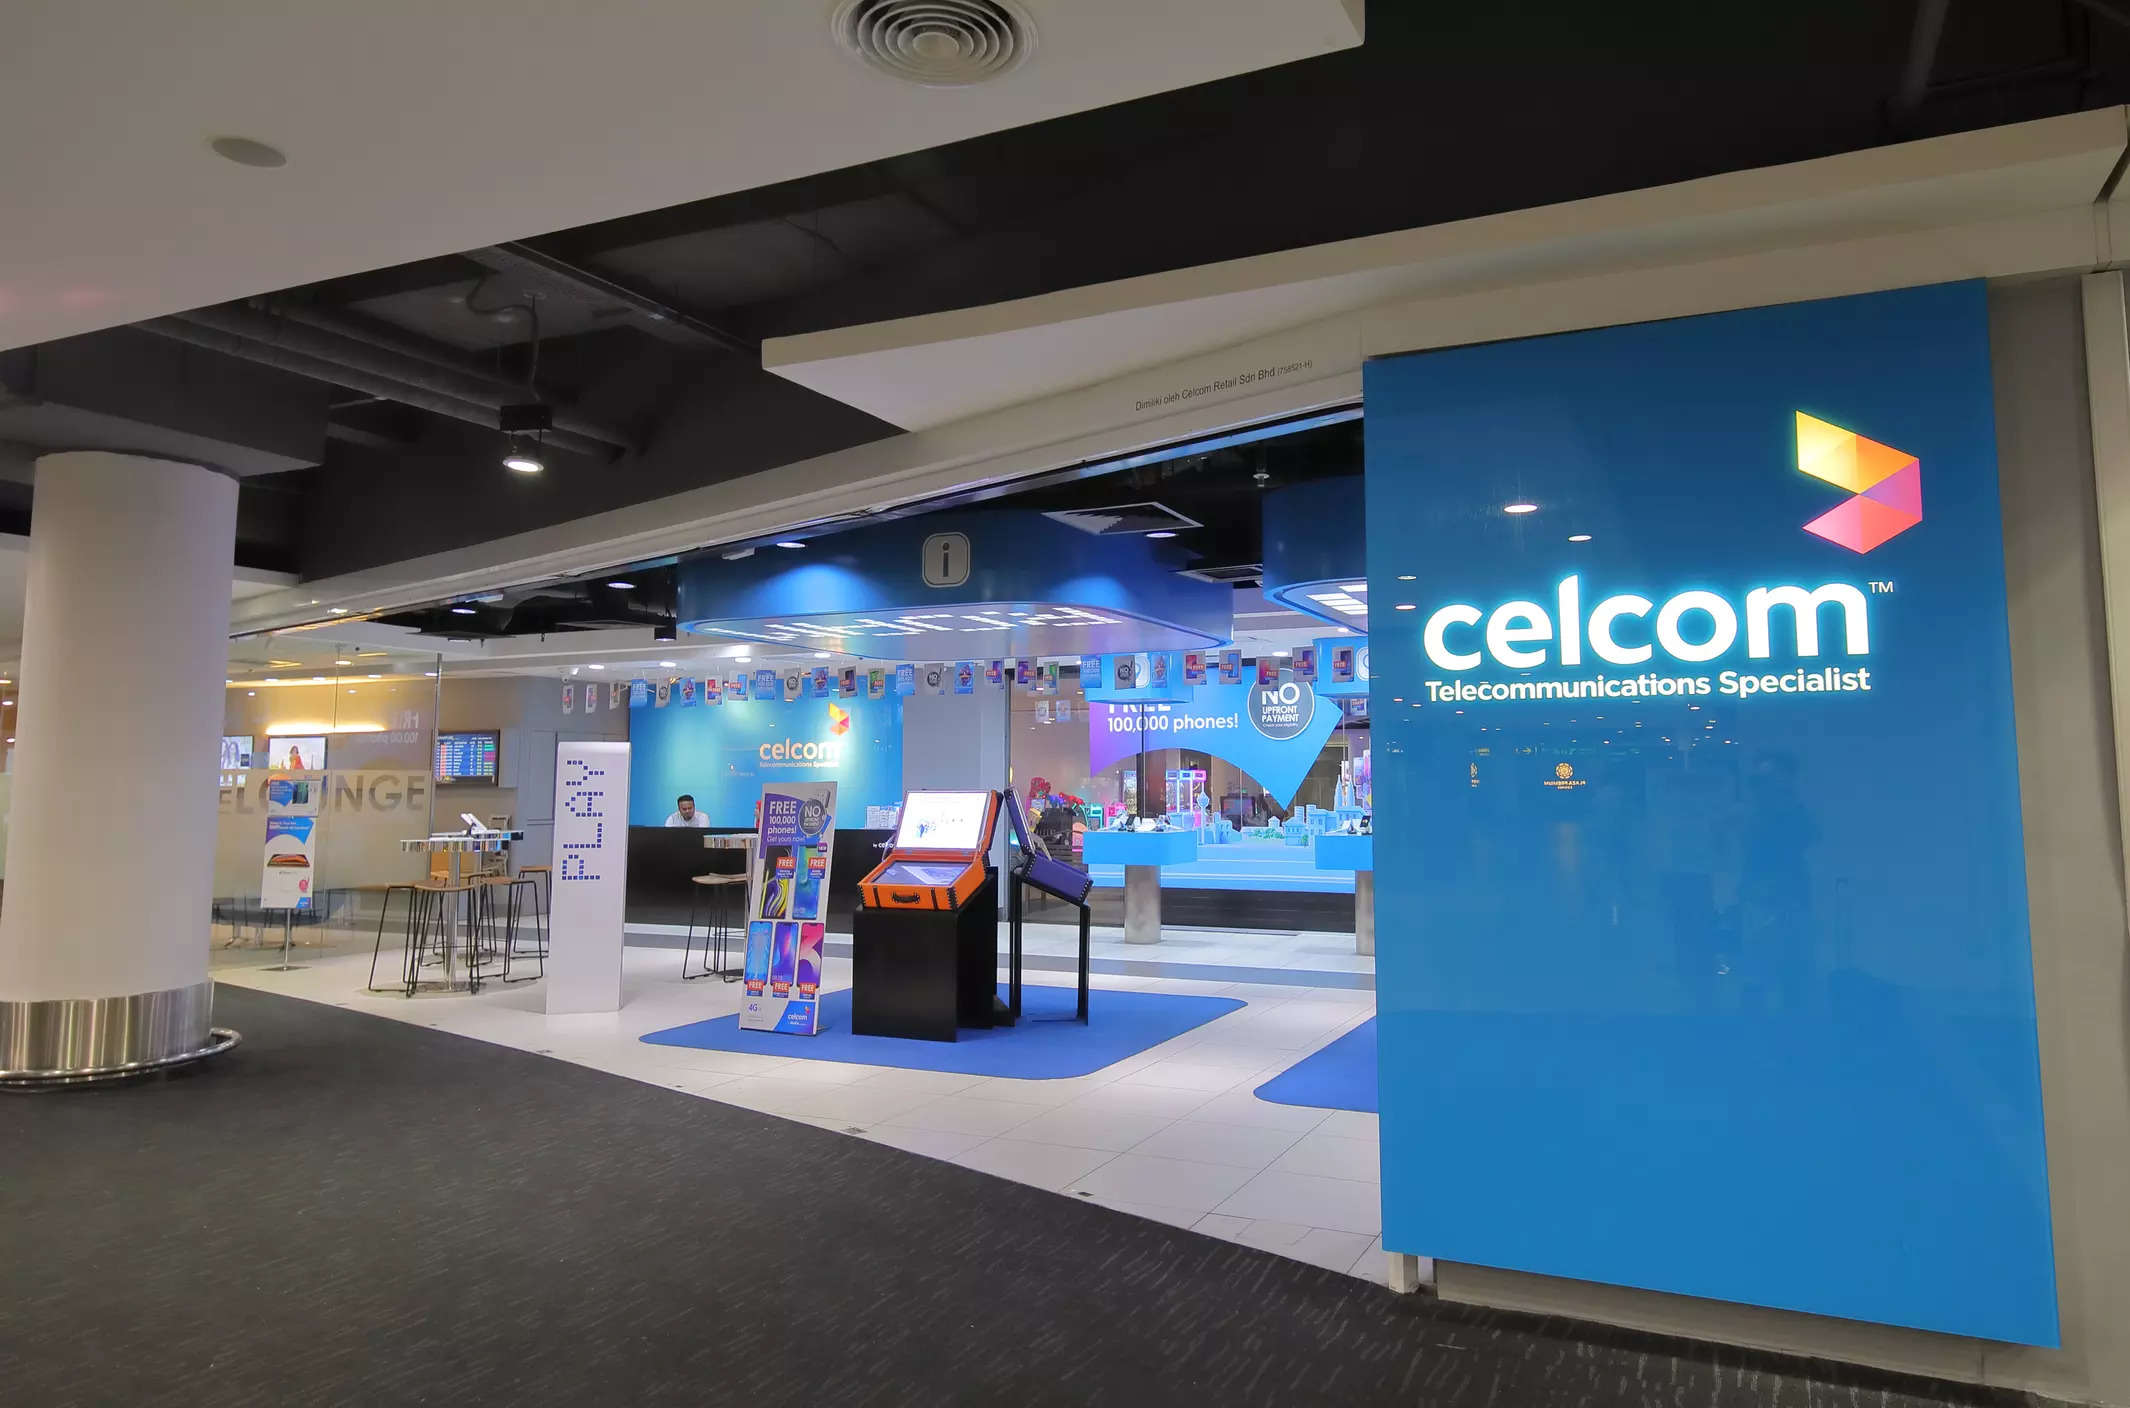 TCS 扩大与马来西亚 Celcom 的合作伙伴关系，以数字化核心业务支持系统